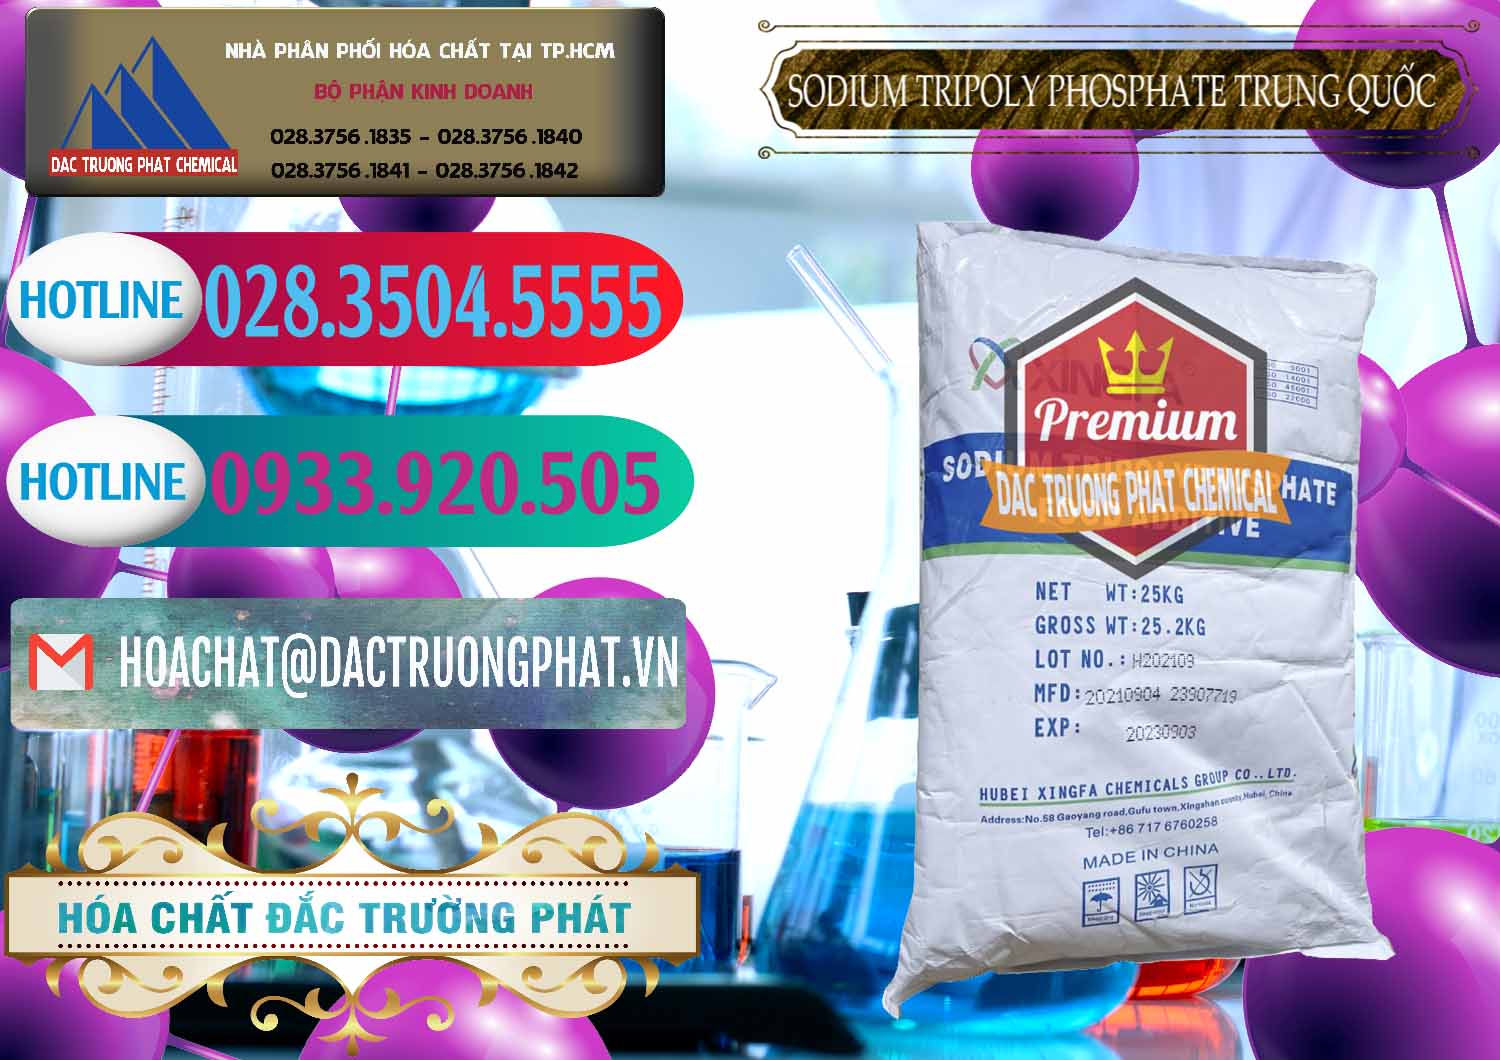 Nơi chuyên bán & cung cấp Sodium Tripoly Phosphate - STPP 96% Xingfa Trung Quốc China - 0433 - Nhà cung cấp ( phân phối ) hóa chất tại TP.HCM - truongphat.vn